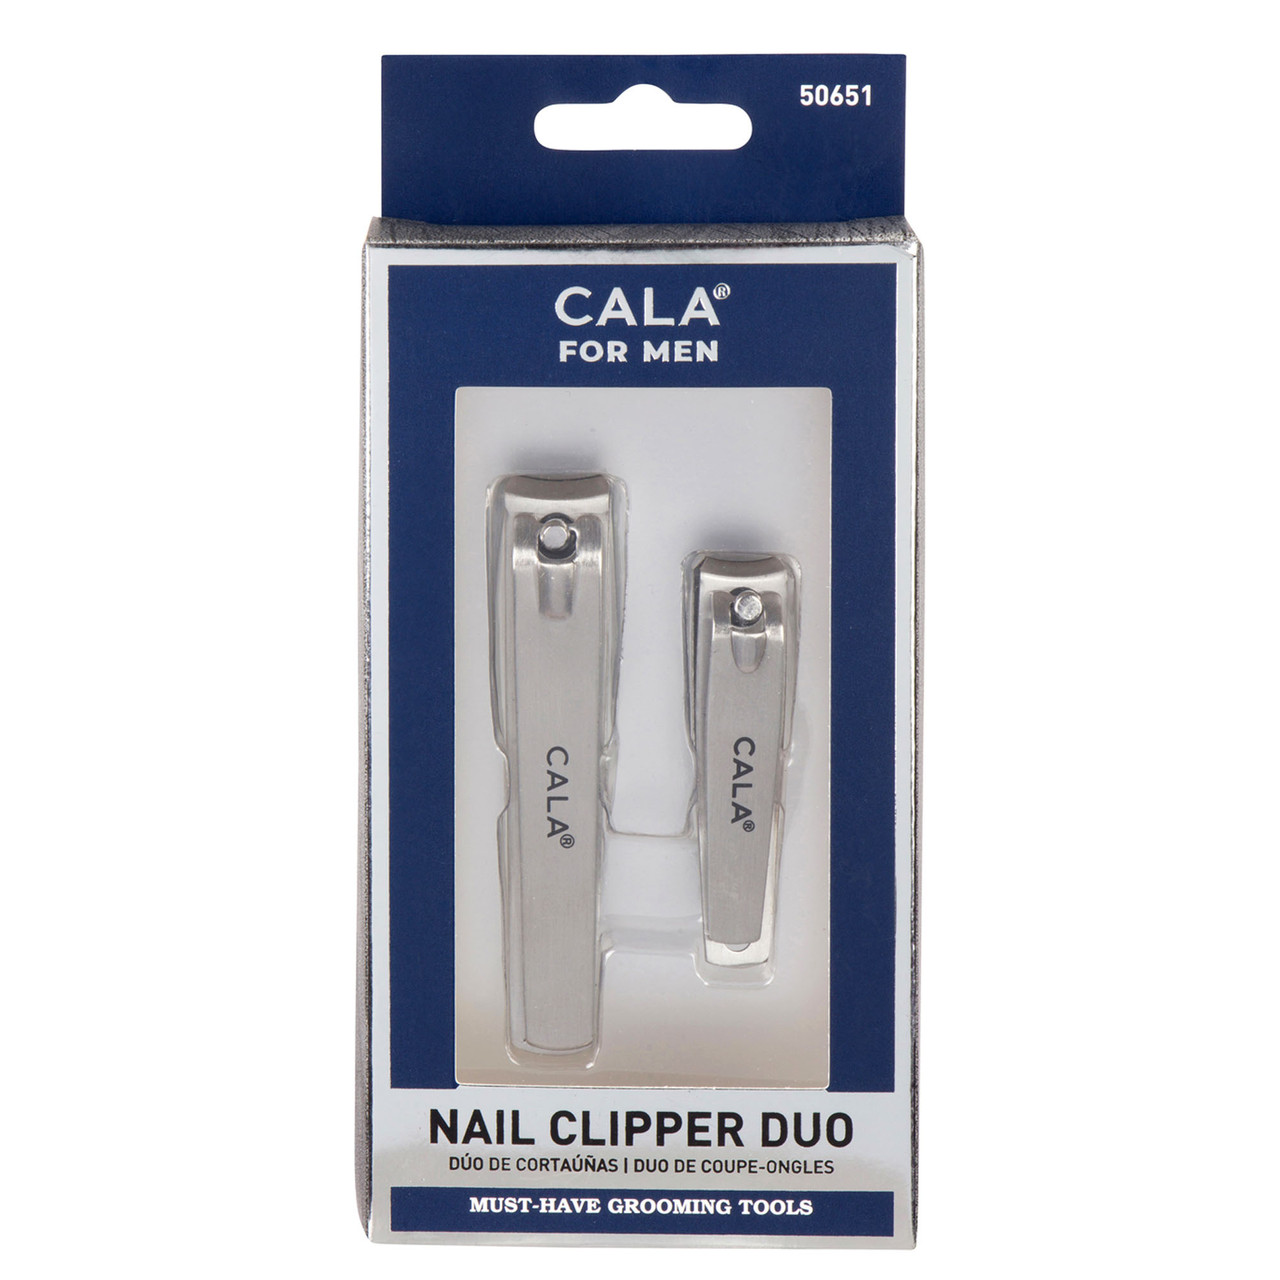 CALA PRO TOENAIL CLIPPER - CALA PRODUCTS